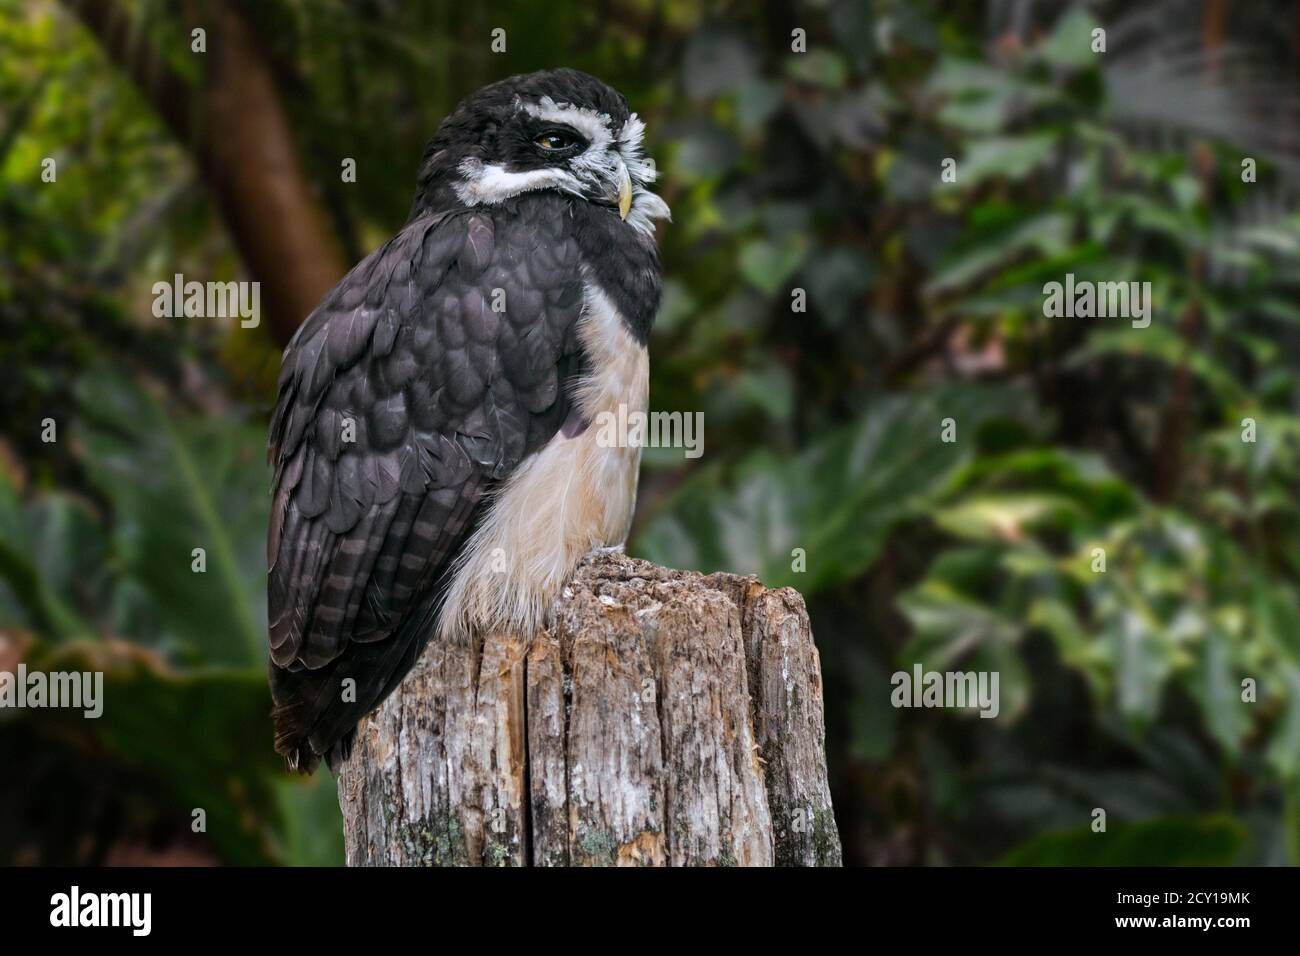 Hibou spectaculaire (Pulsatrix perspicillata) perché sur une souche d'arbre dans la forêt tropicale humide, indigène aux néotropiques Banque D'Images